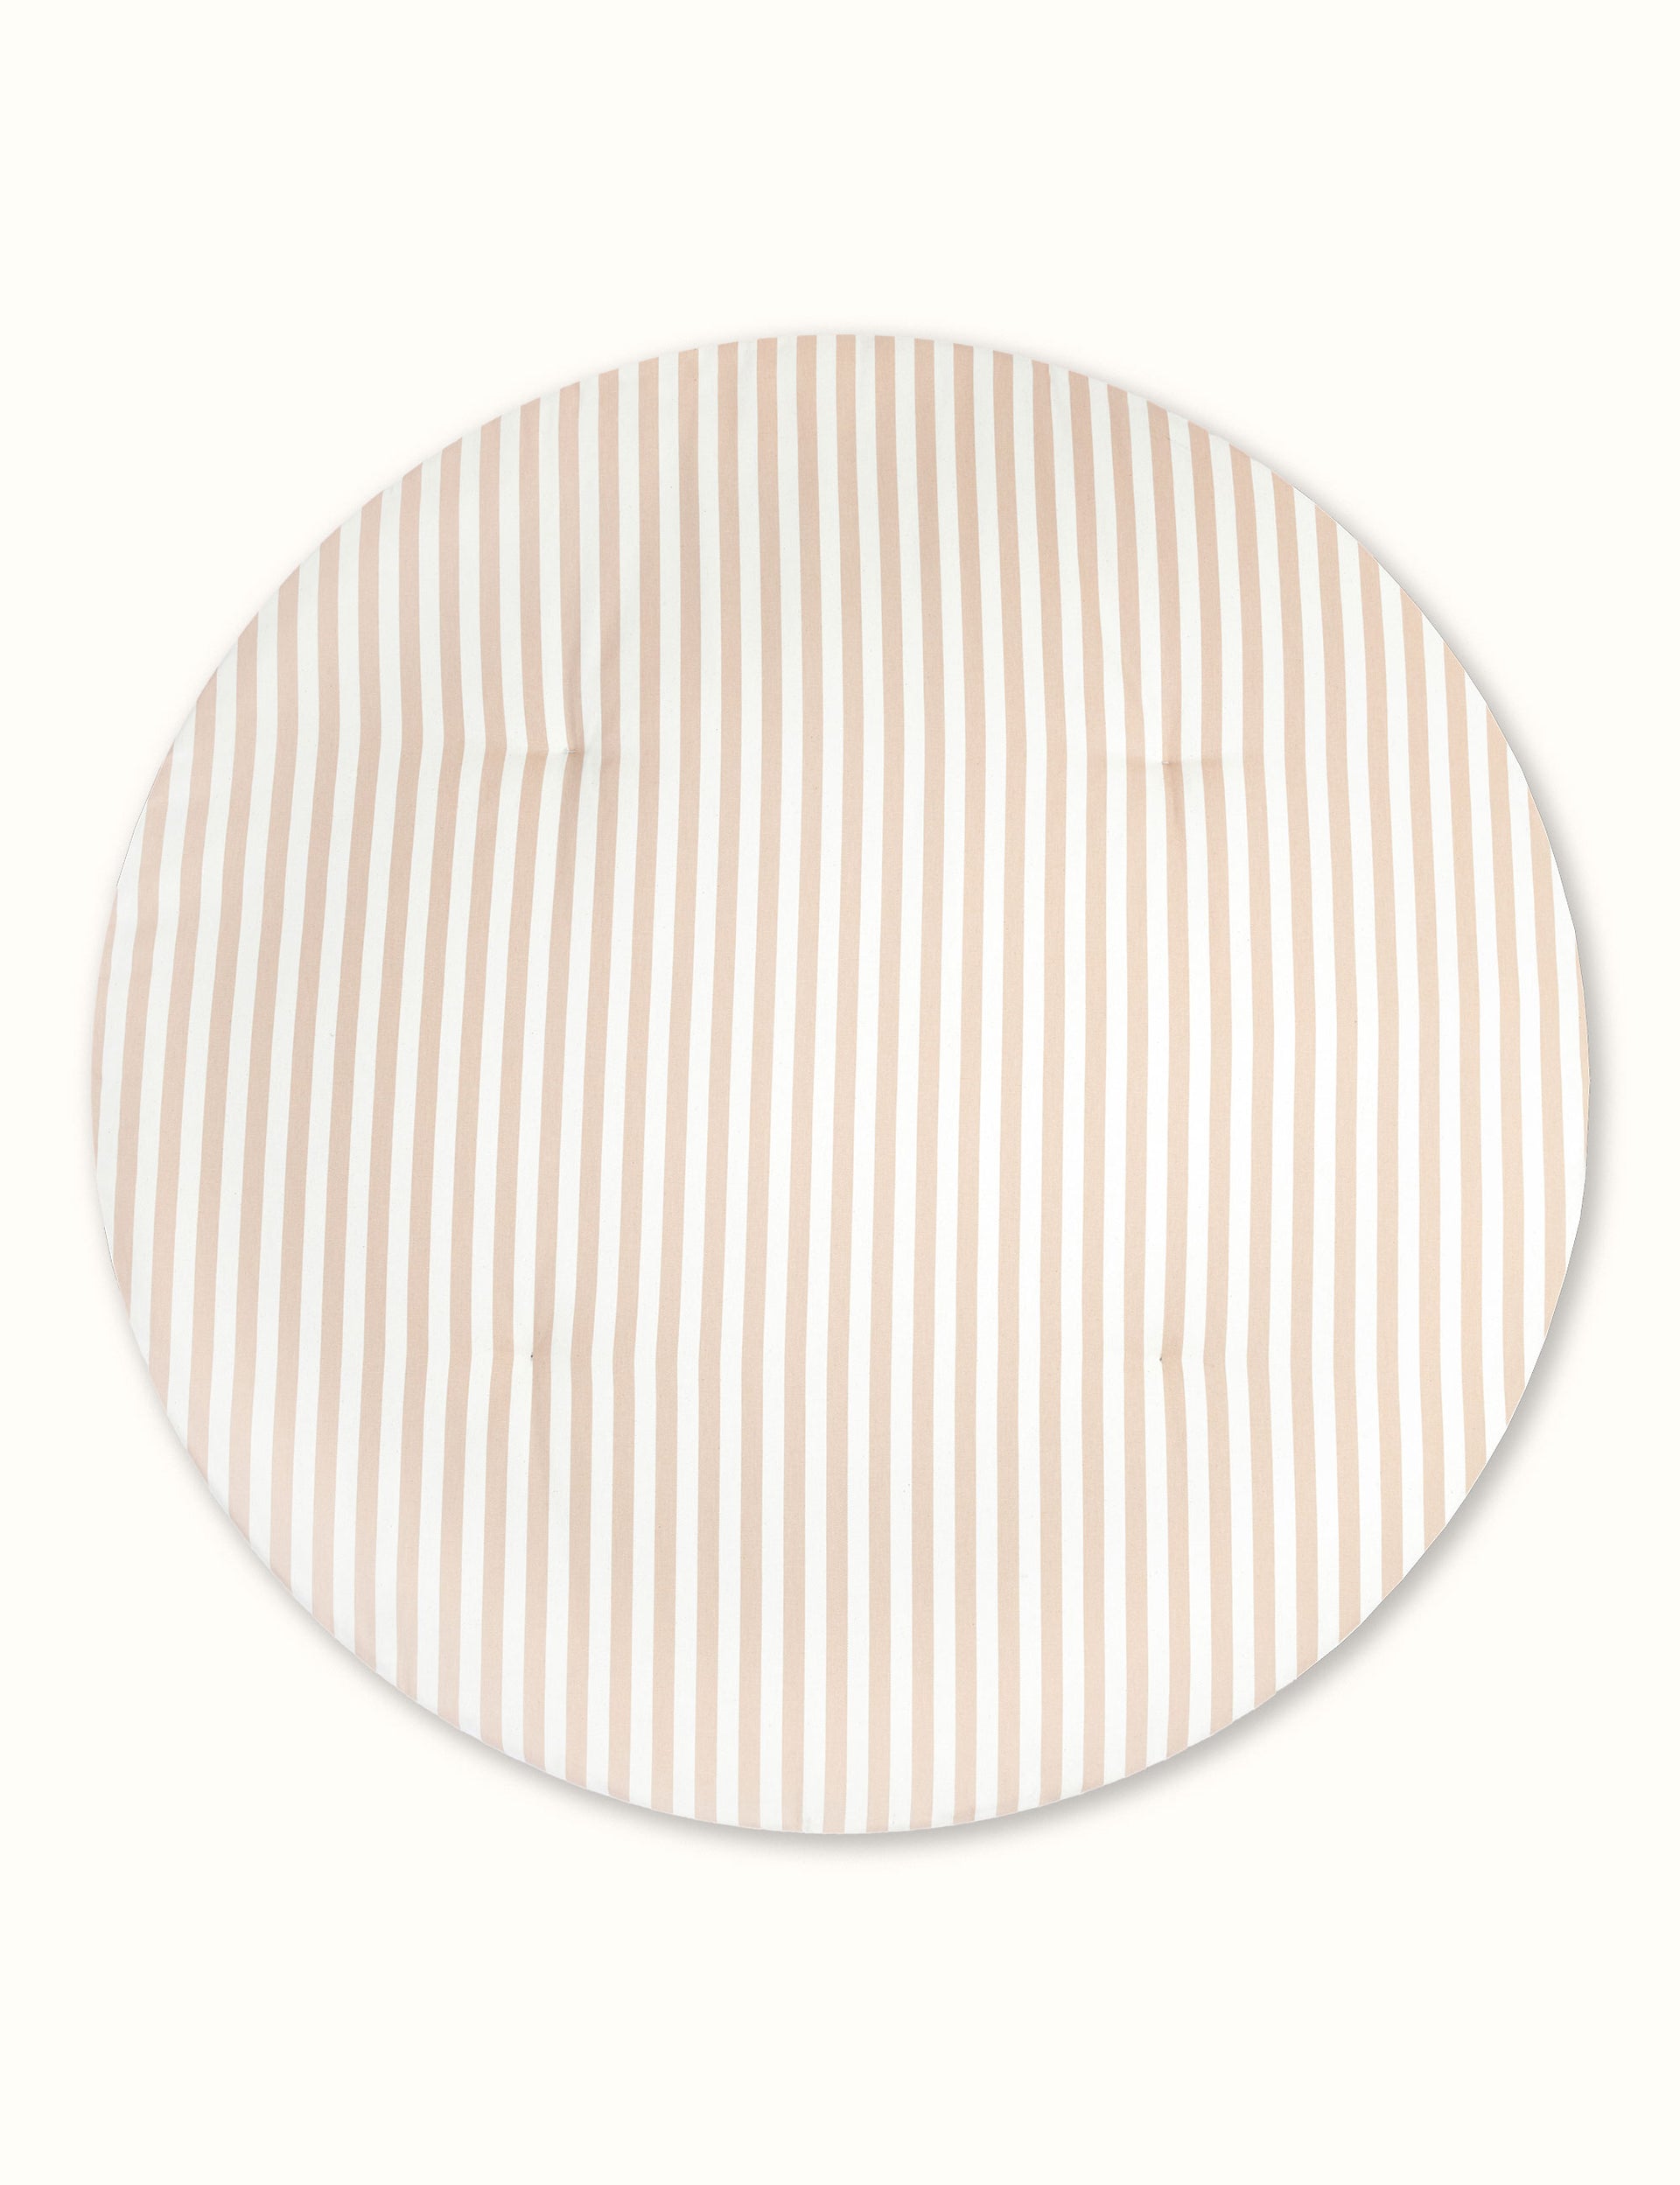 Nobodinoz Stripe Round Playmat 110cm